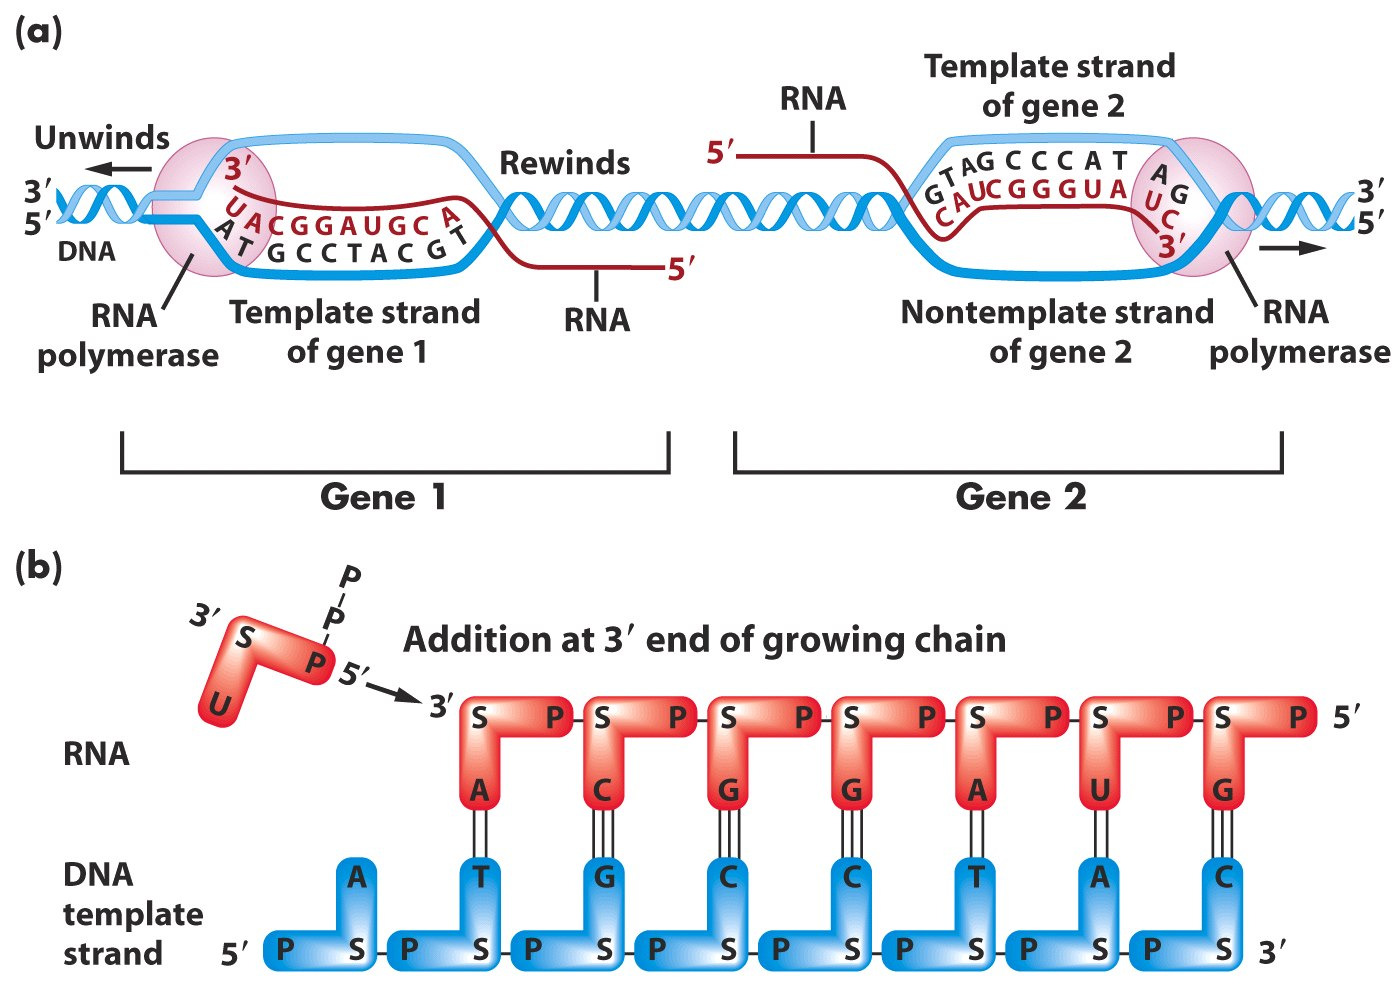 transkribe olan baz -10 bölgesi: Bakteriyel promotorda transkripsiyon başlangıcından 10 baz geride bulunan ve RNA polimeraz tarafından tanınan bölge.